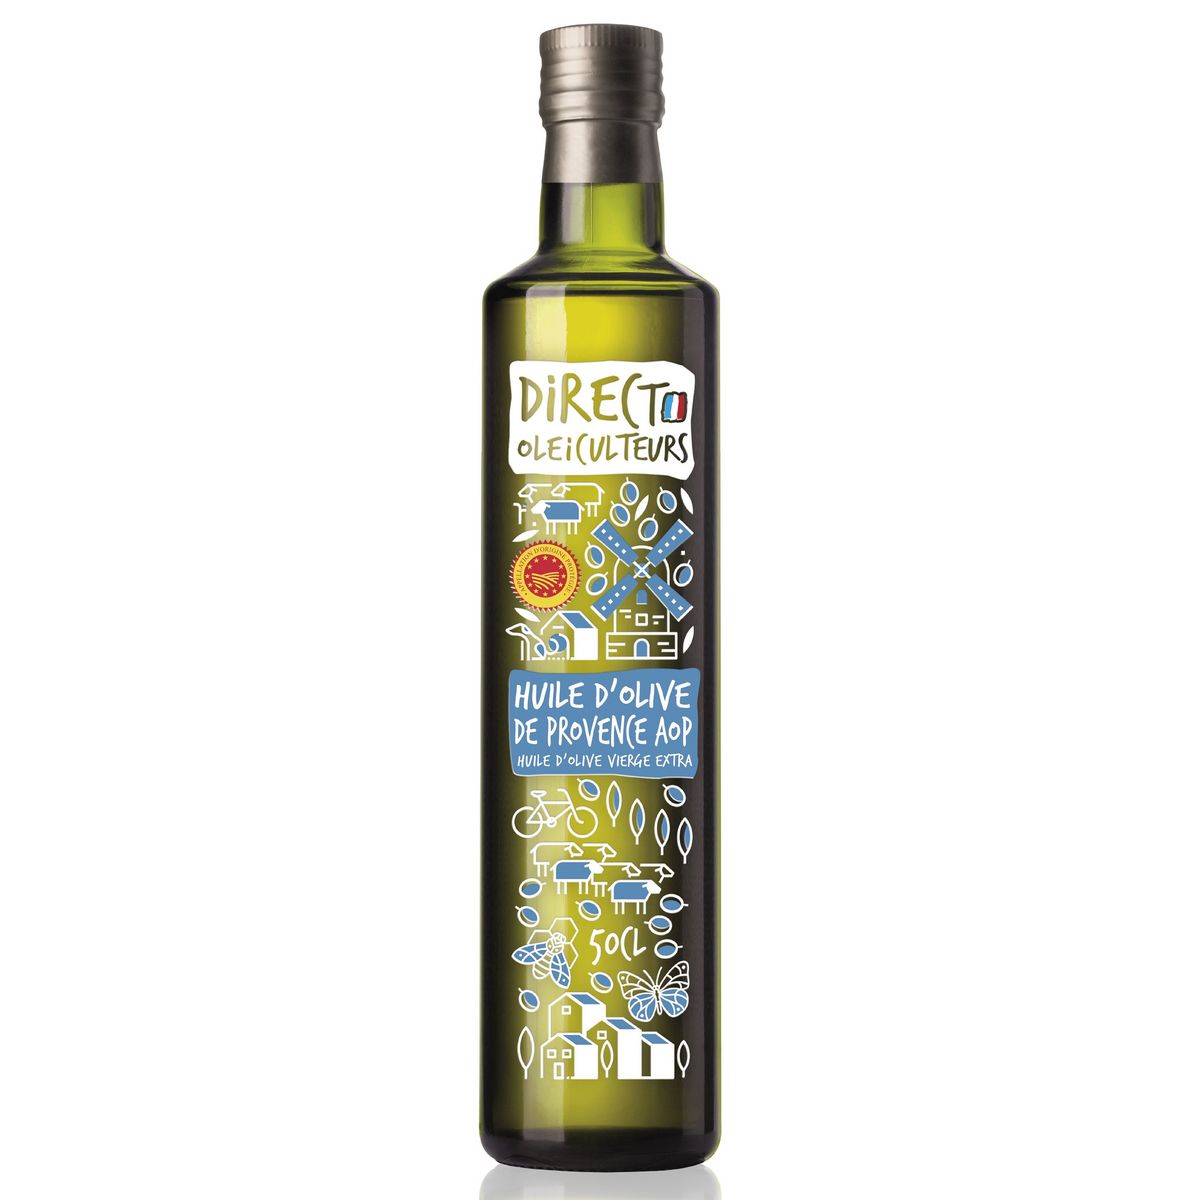 DIRECT OLEICULTEURS Huile d'olive de Provence AOP vierge extra 50cl